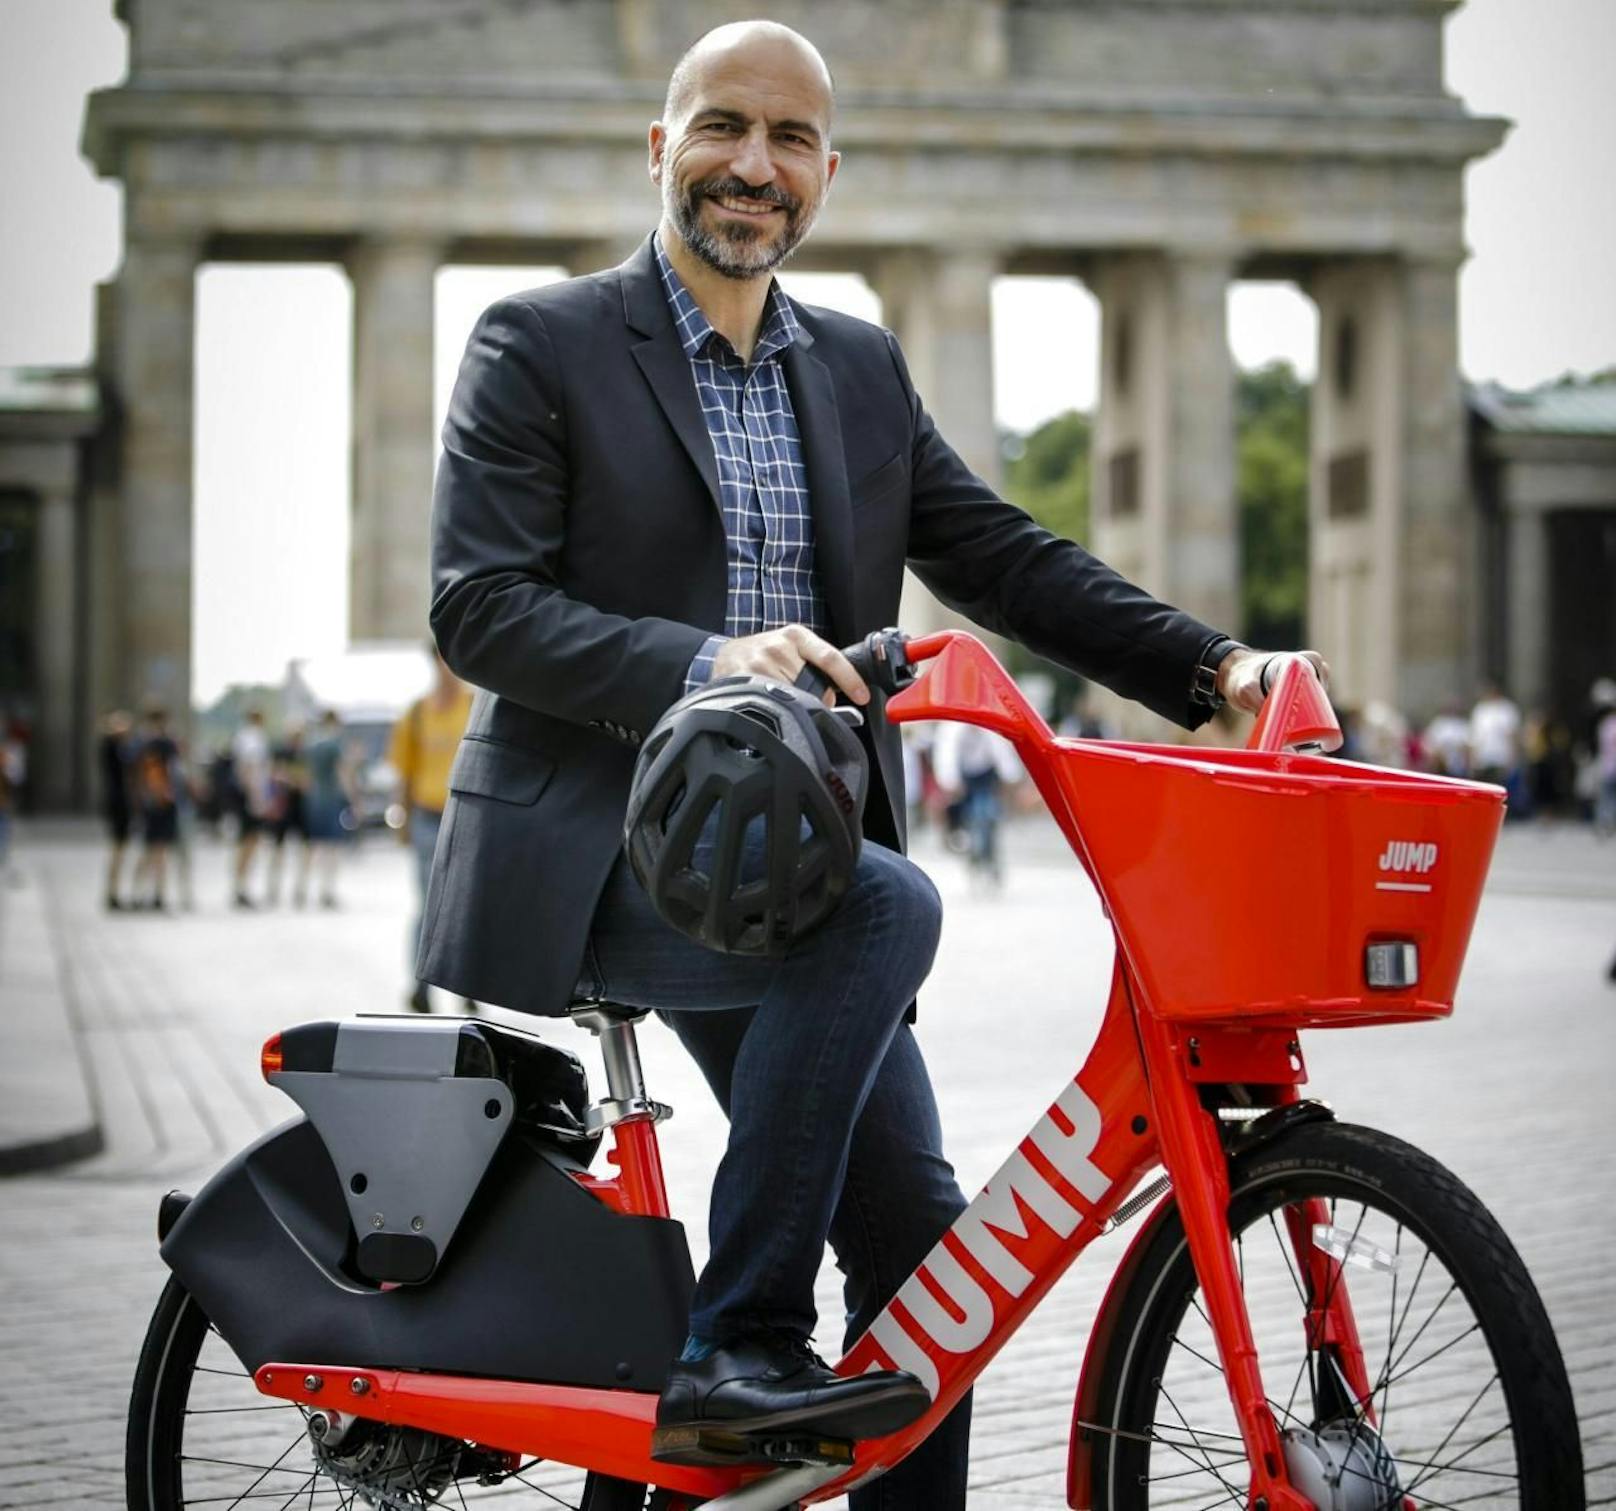 JUMP in Berlin: Dara Khosrowshahi, Uber-CEO